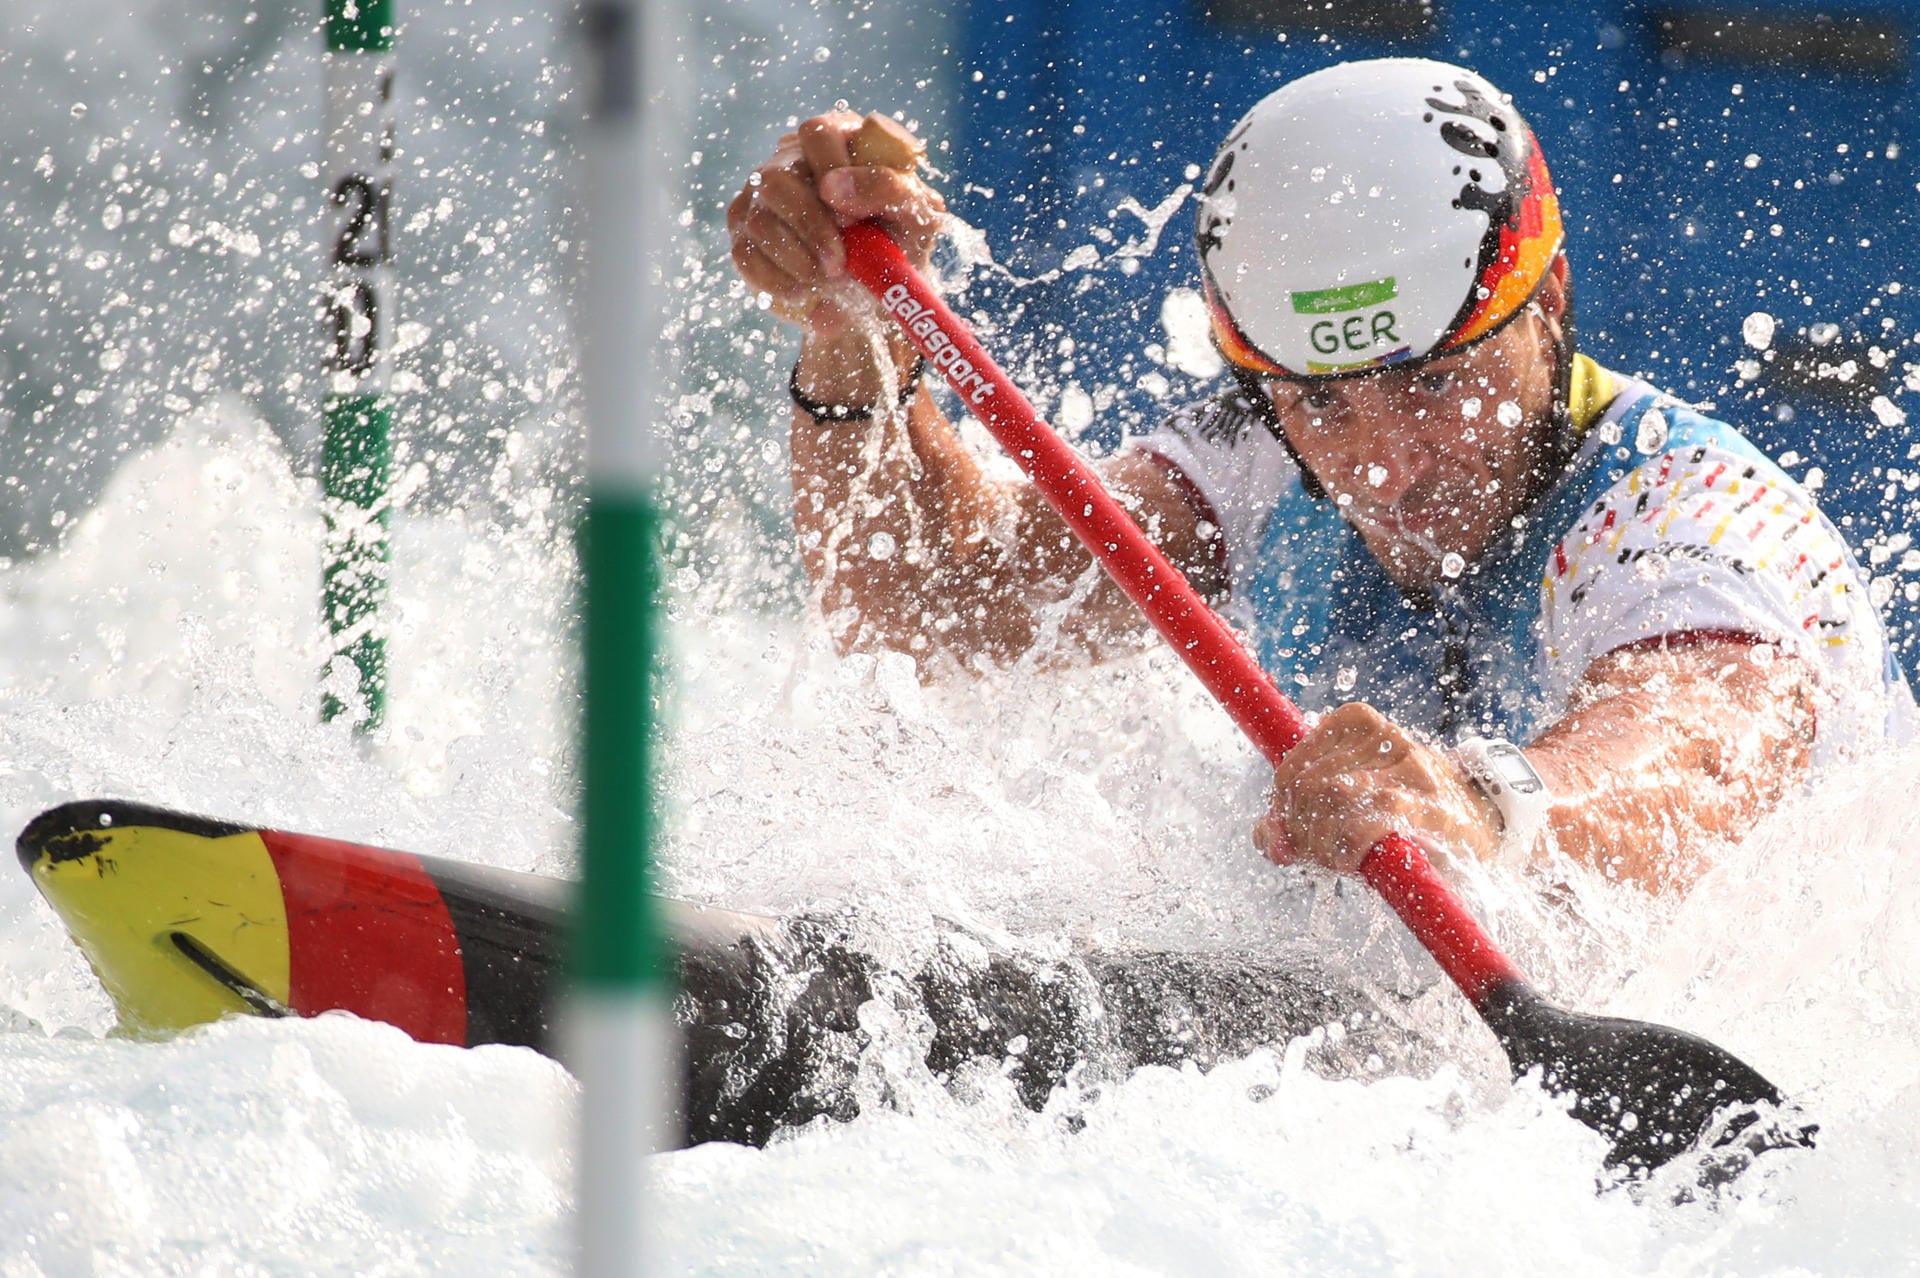 Wasserspiele: Der deutsche Kanute Sideris Tasiadis kämpfte beim Slalom gegen die Elemente.